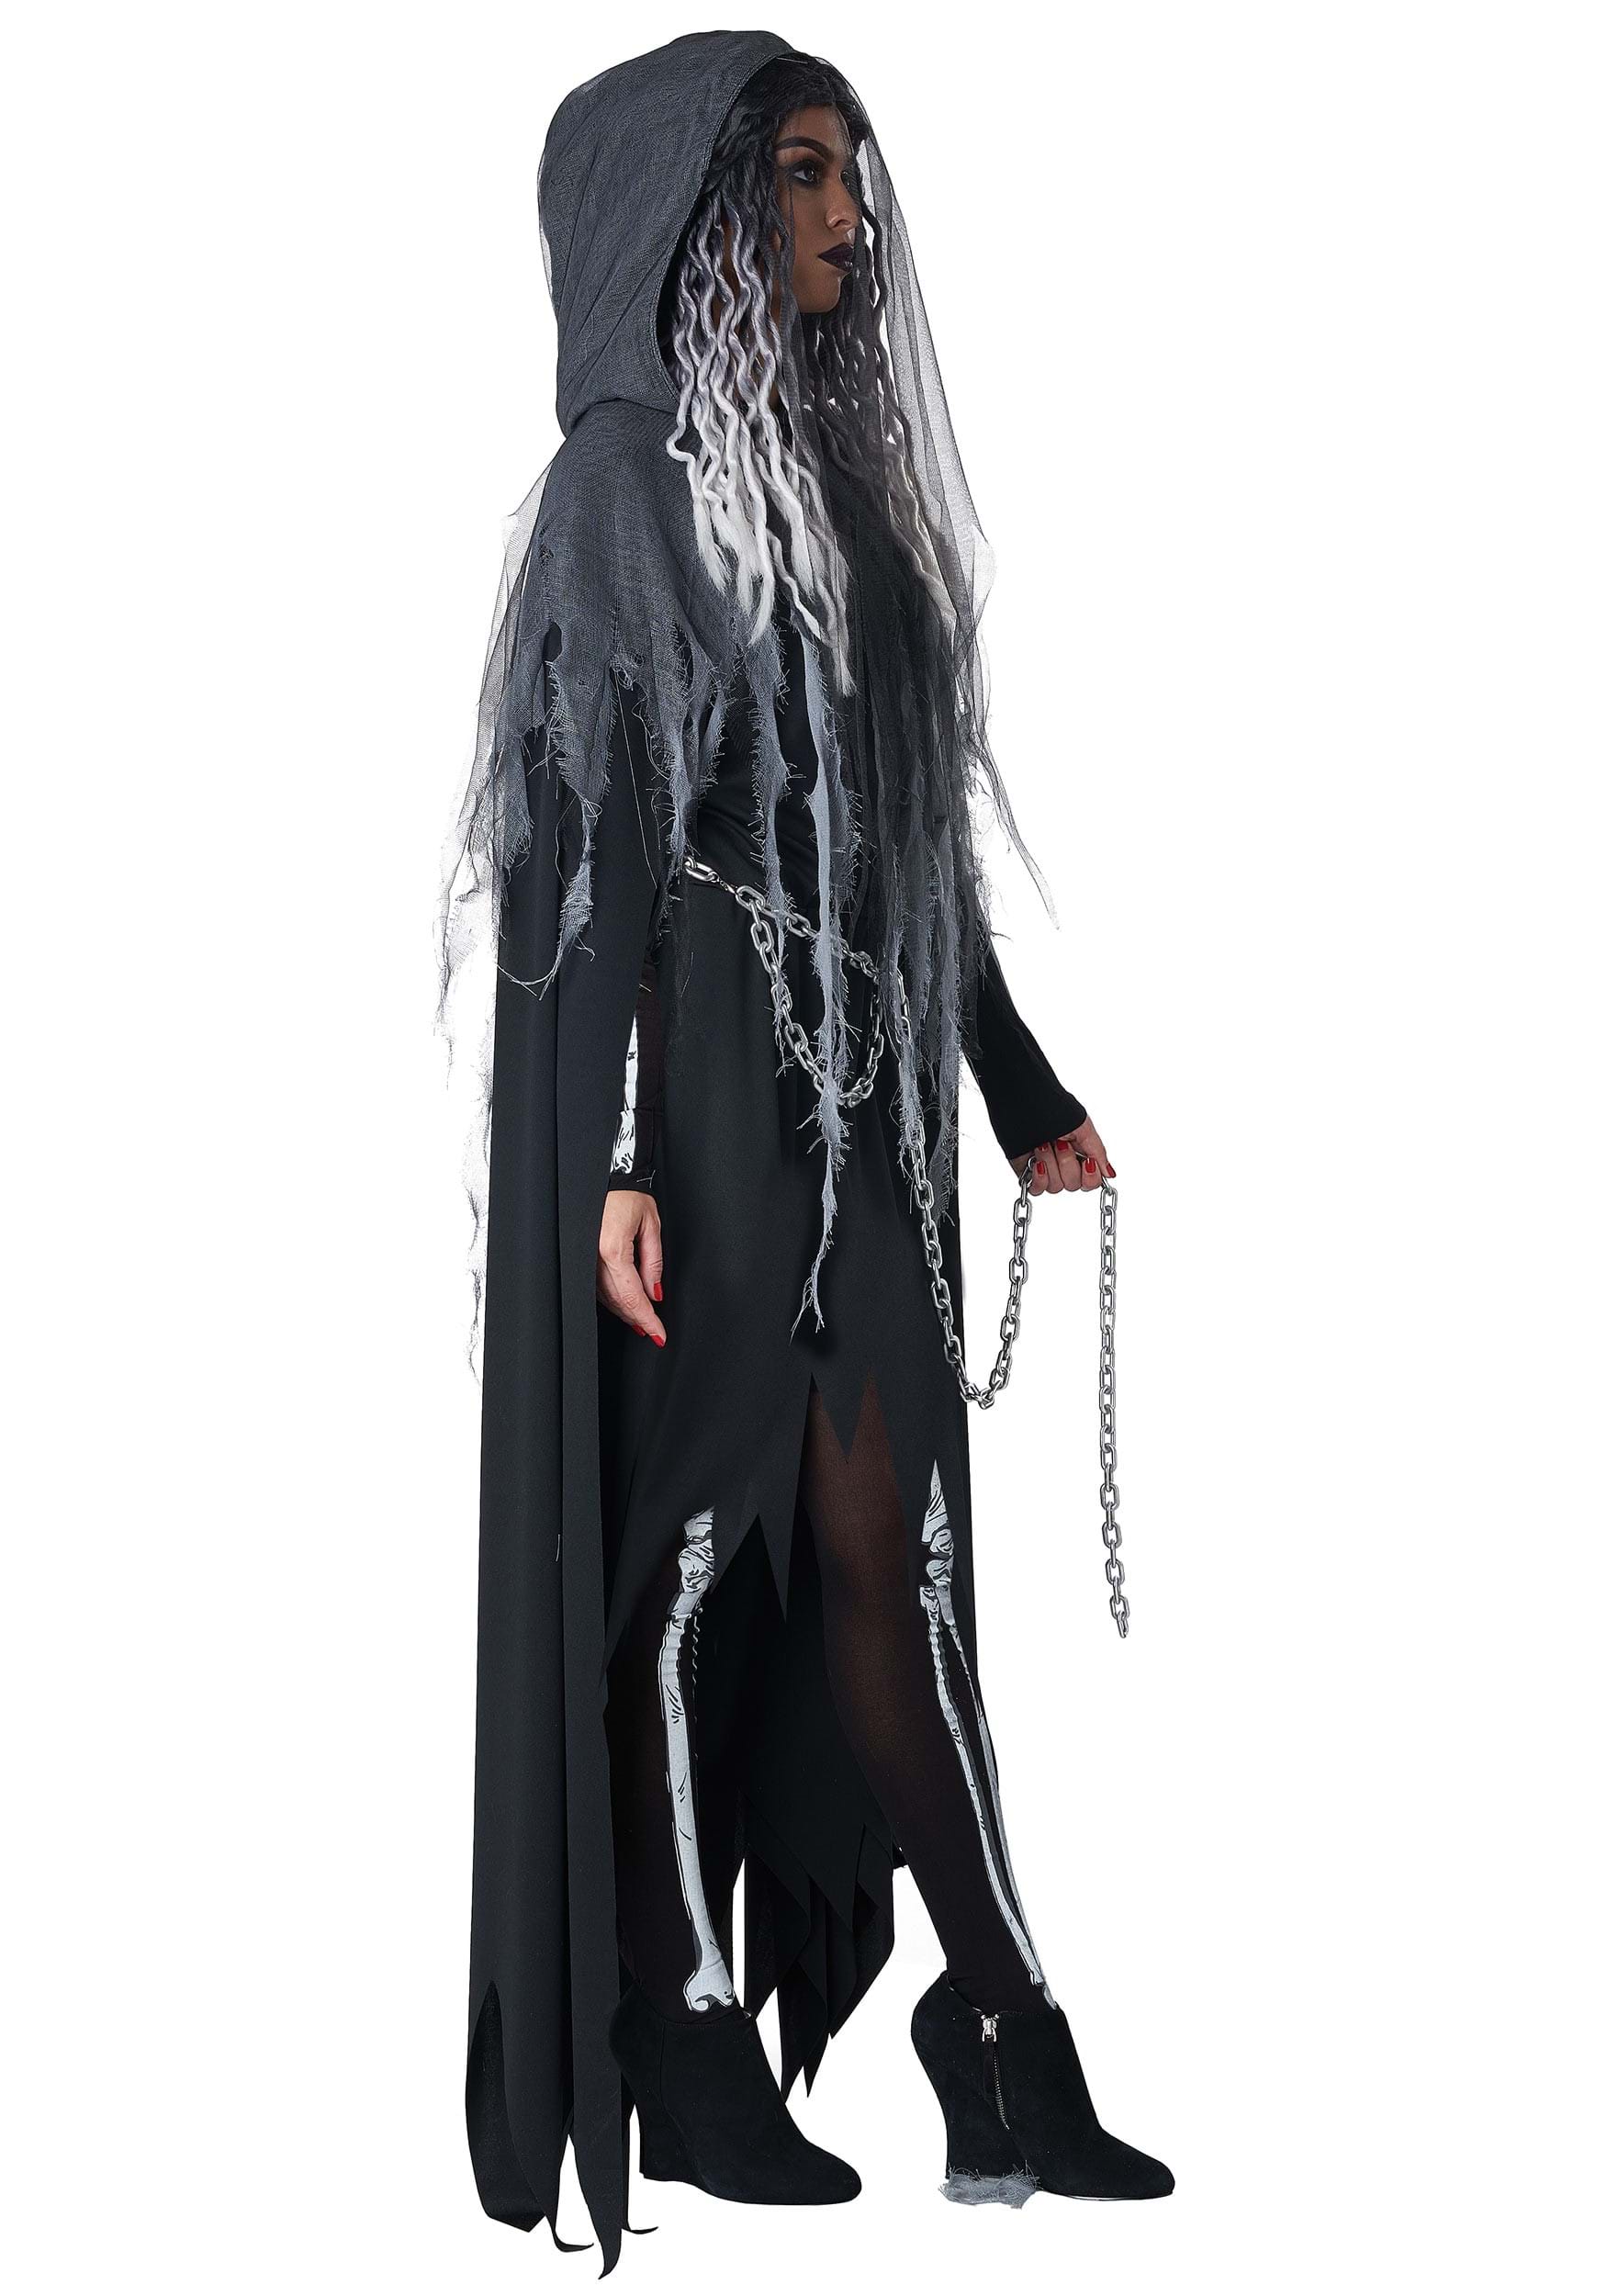 Miss Reaper Costume For Women